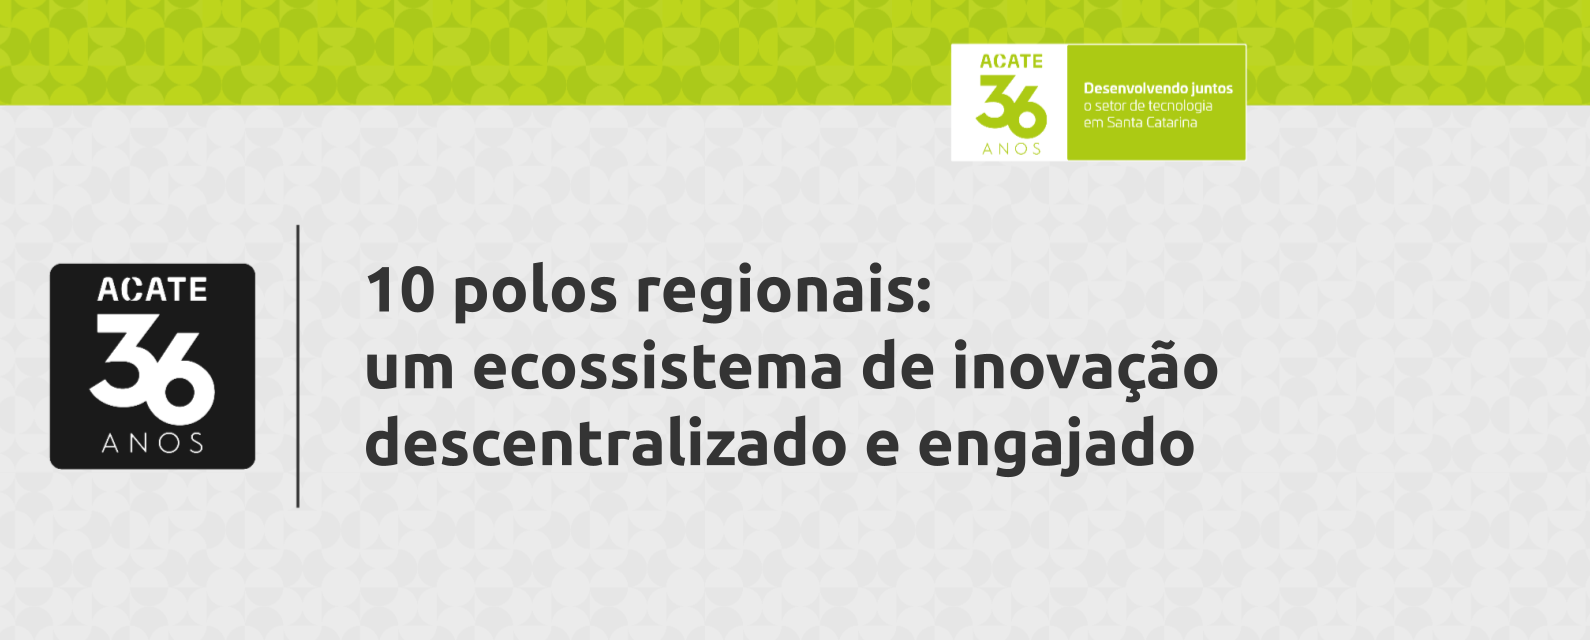 10 polos regionais: um ecossistema de inovação descentralizado e engajado.